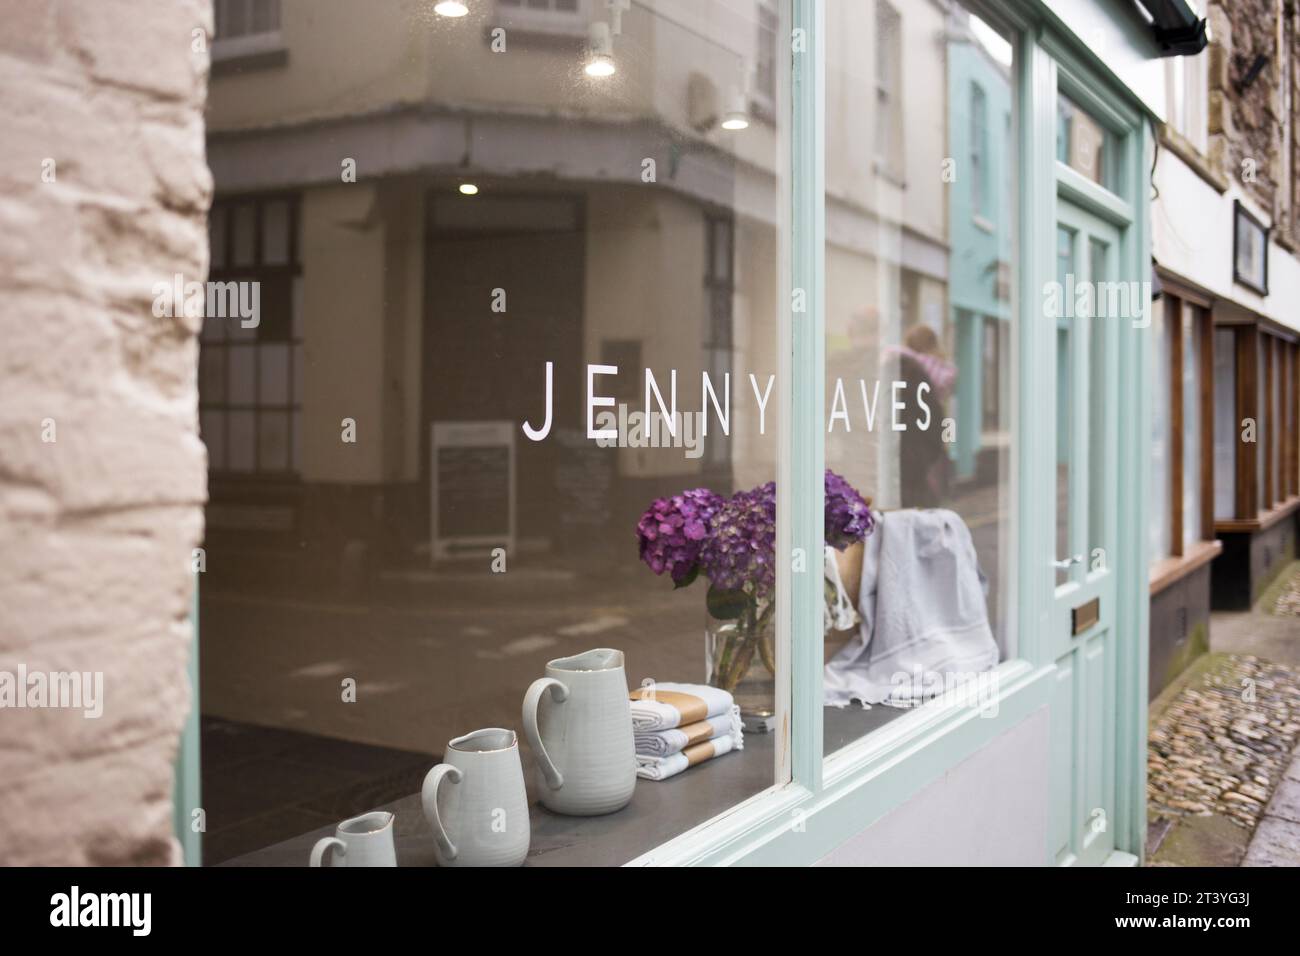 Mevagissey dans la série Cornwall - vitrine Jenny Aves avec reflet et fleurs violettes Banque D'Images